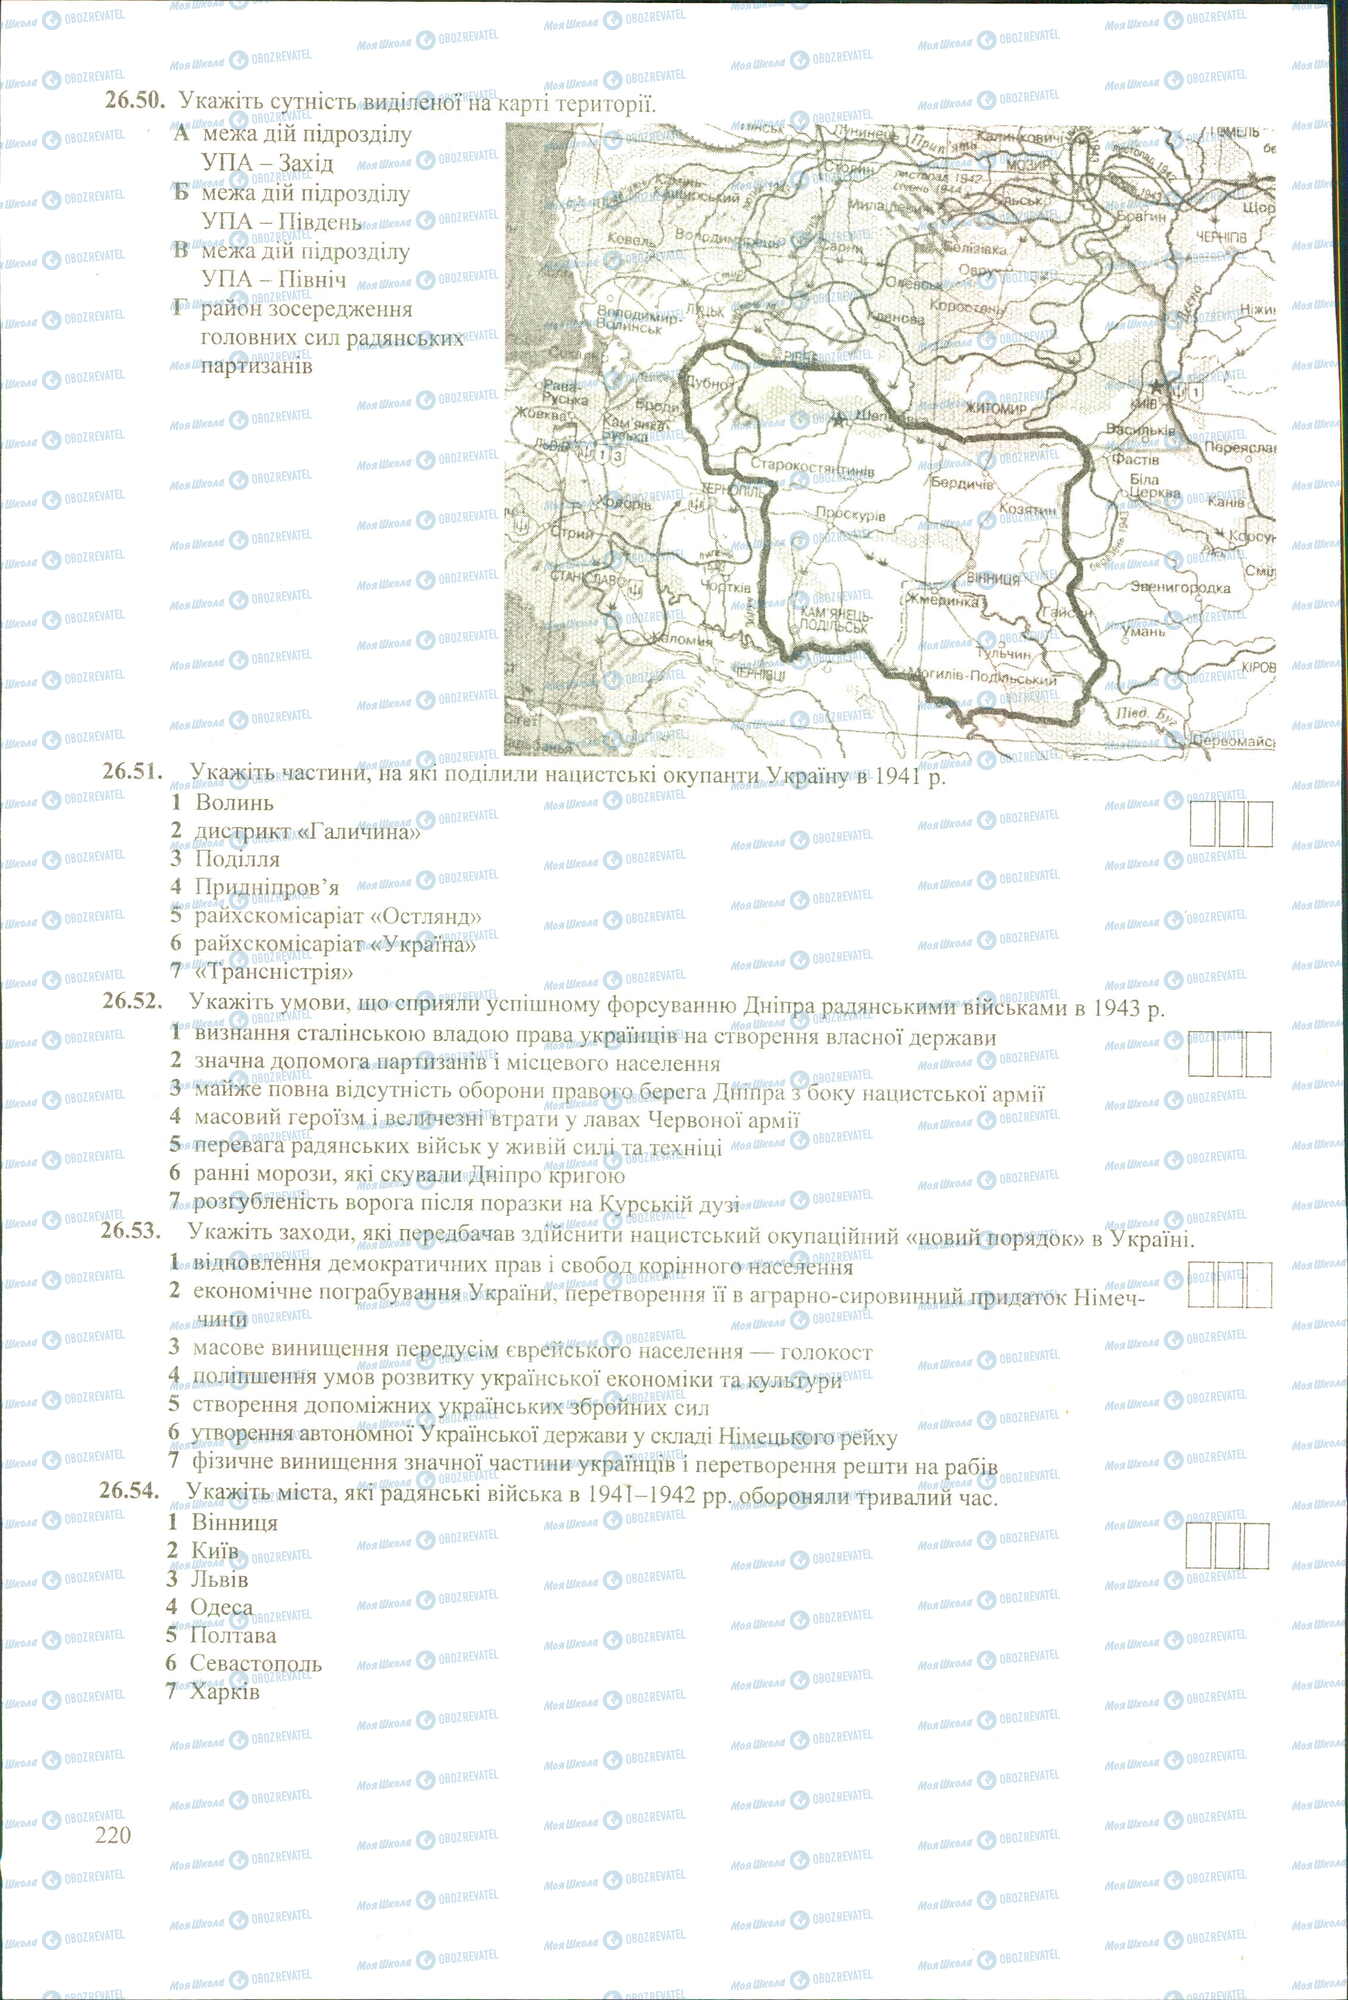 ЗНО История Украины 11 класс страница 50-54